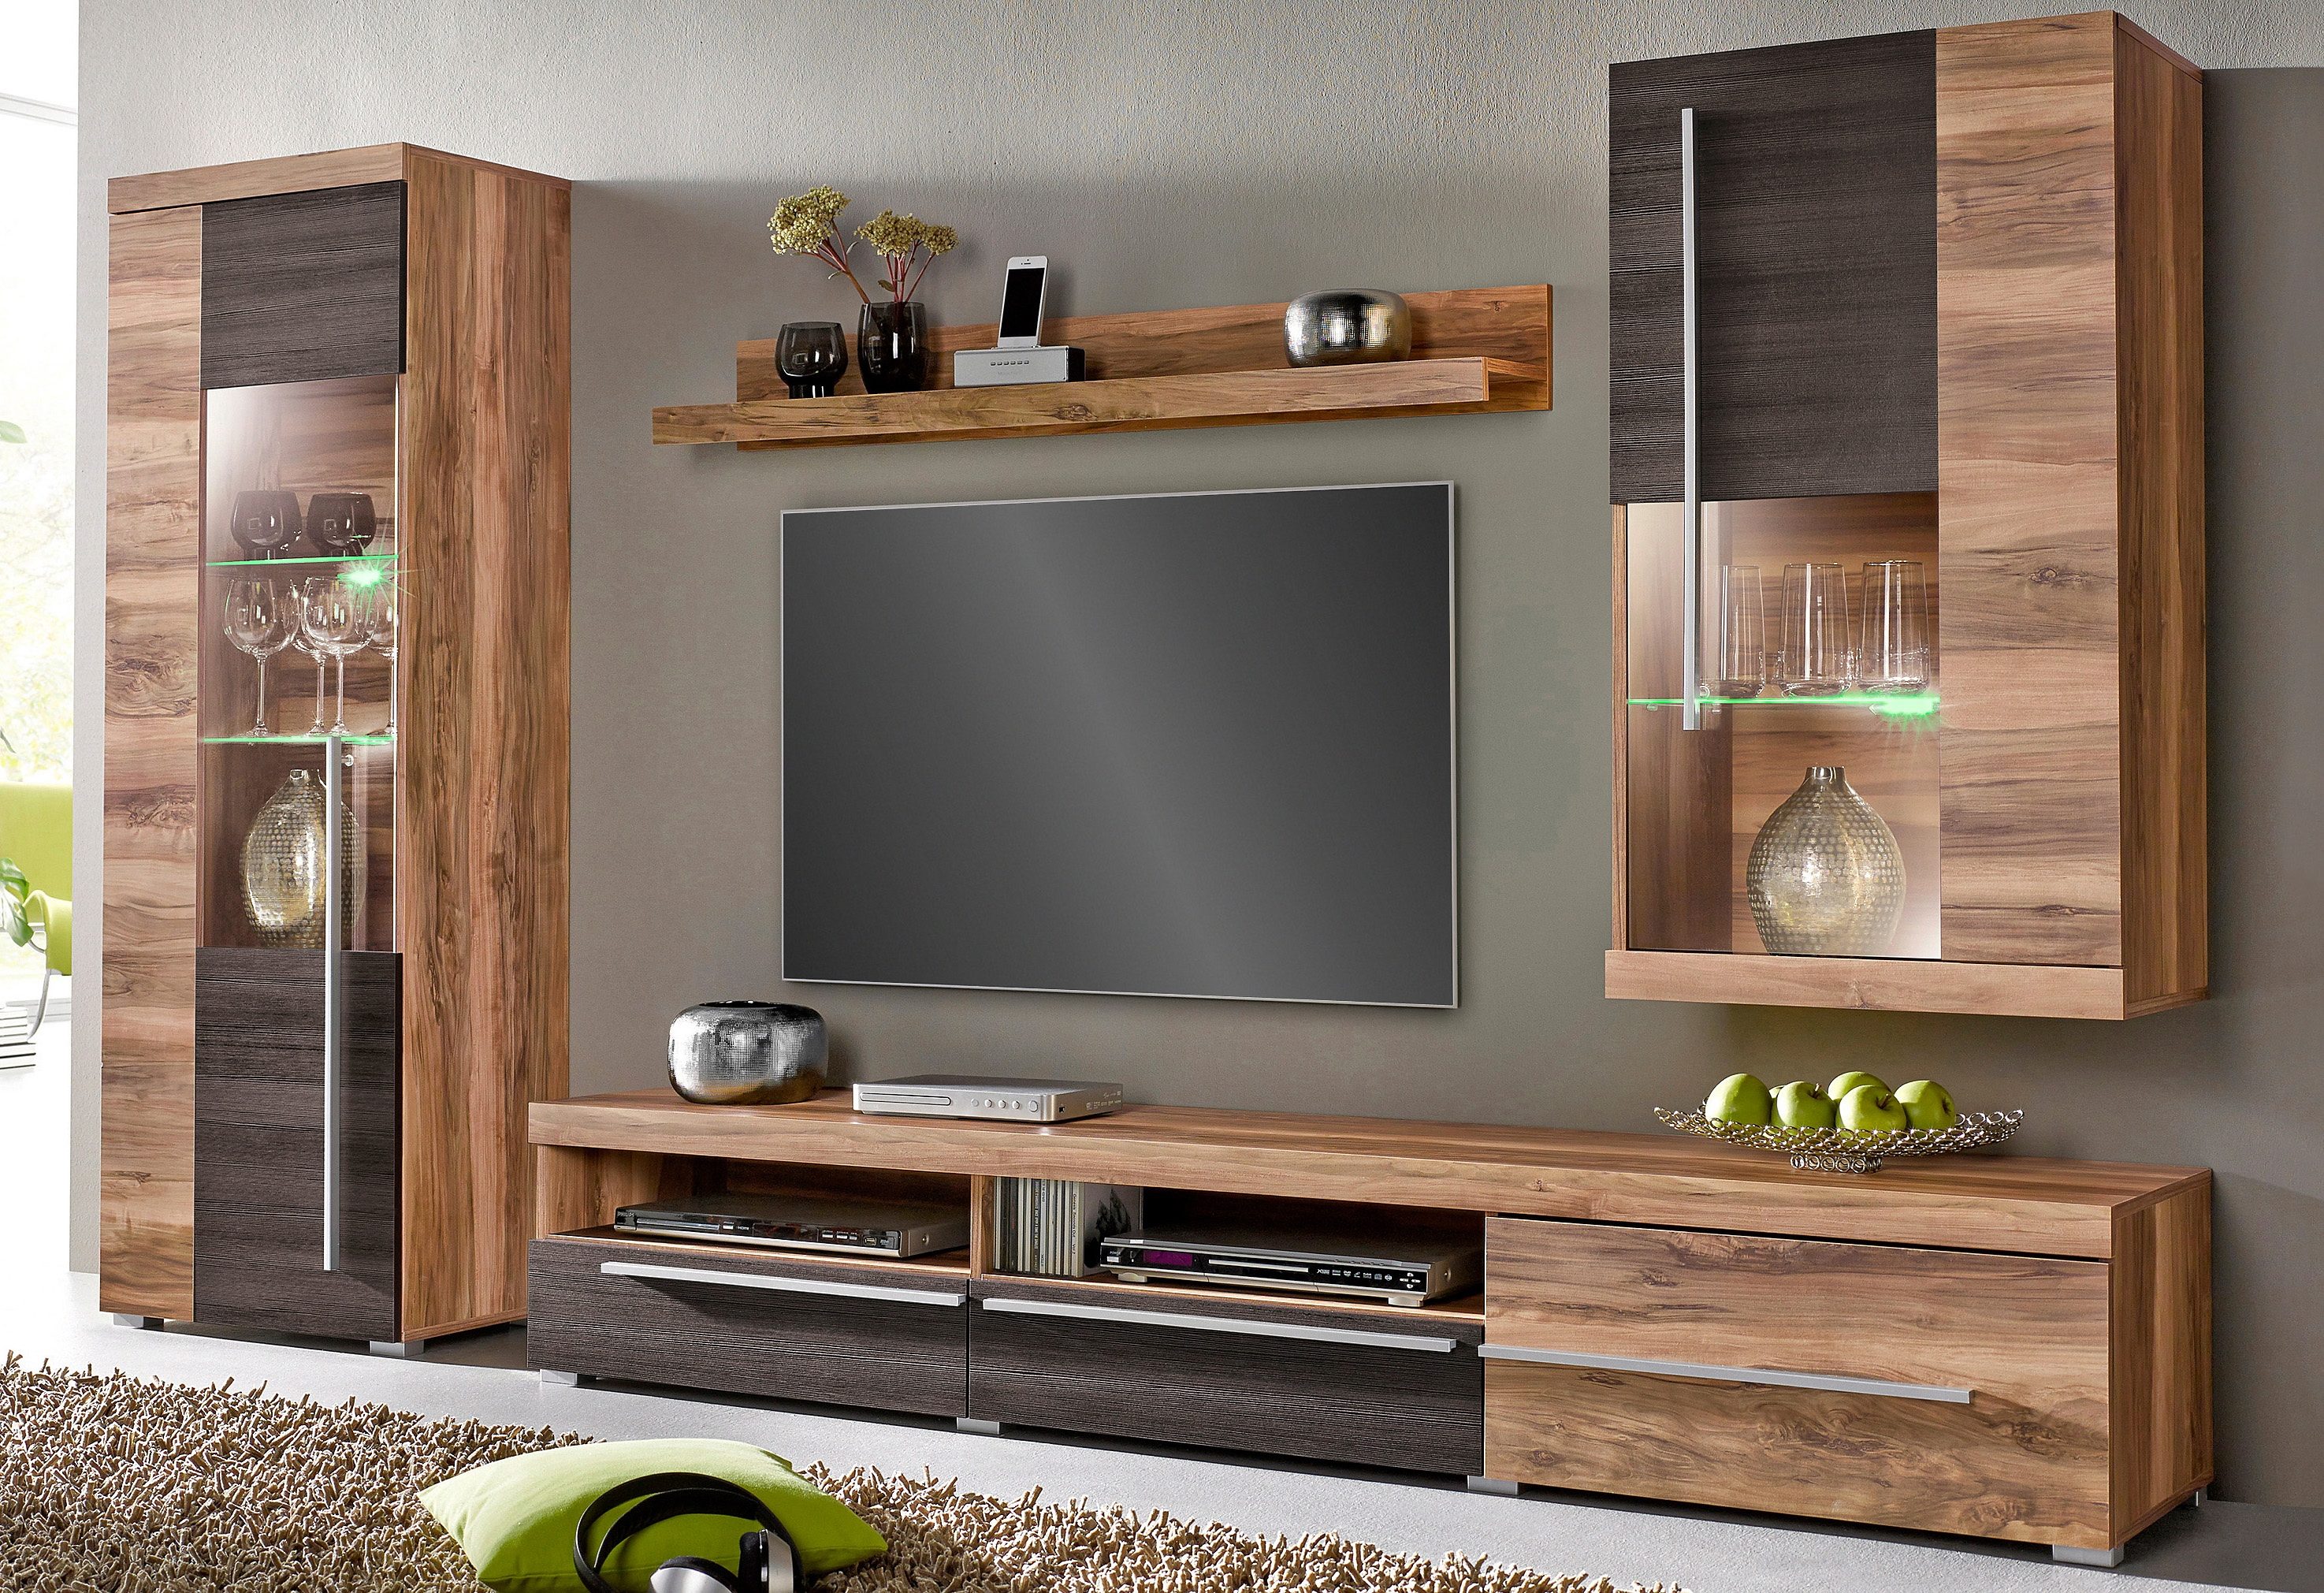 TV-meubel kopen? Vind ideale meubel voor jouw woonkamer! | OTTO